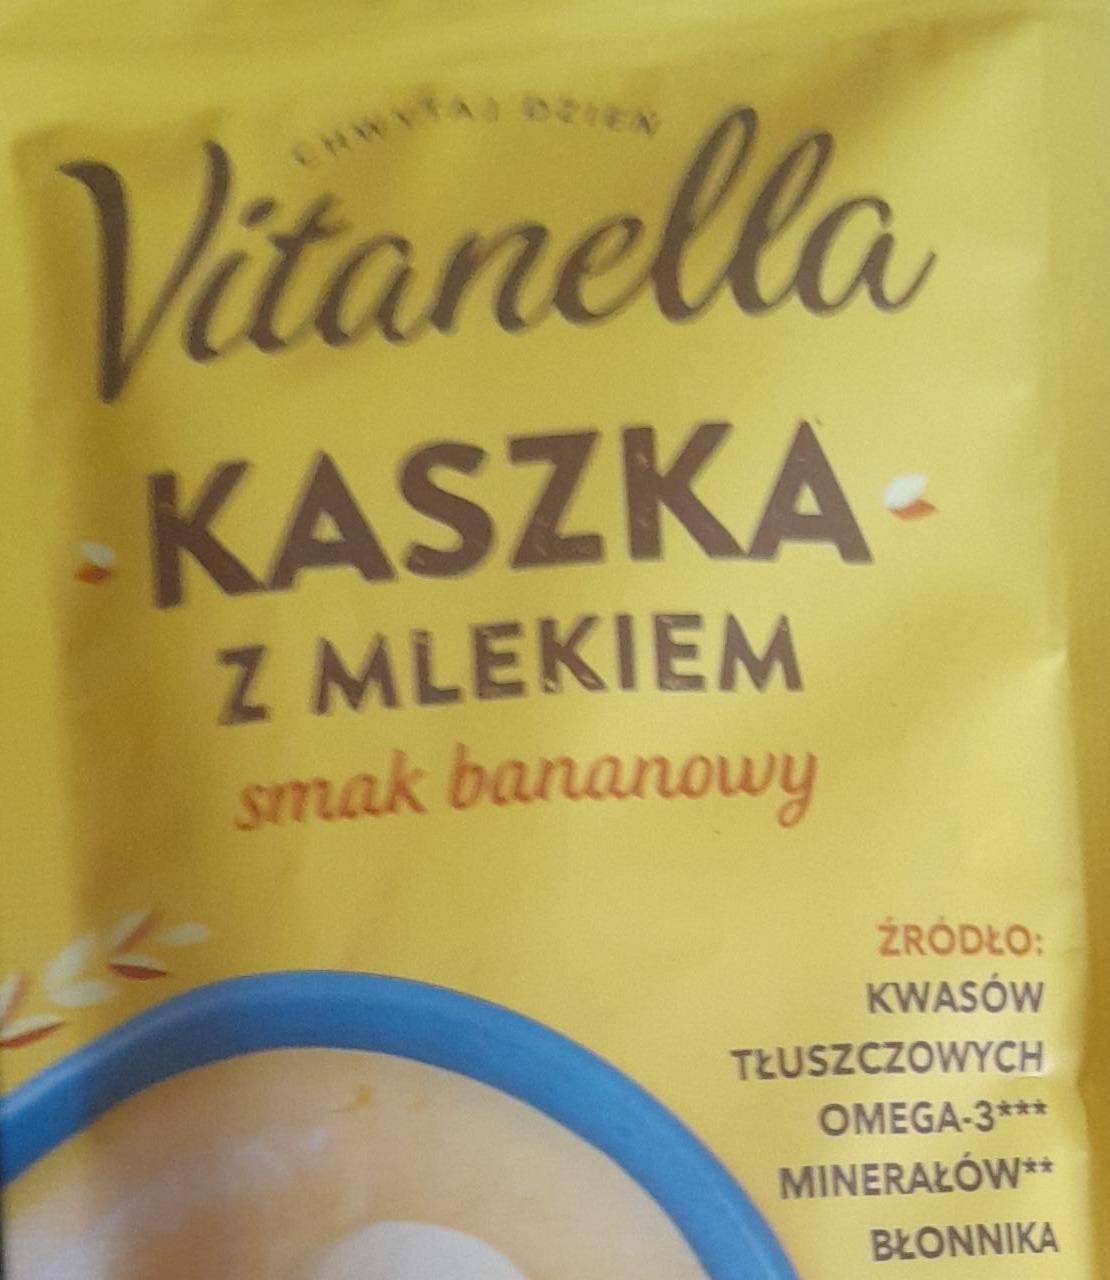 Zdjęcia - Kaszka z mlekiem smak bananowy Vitanella